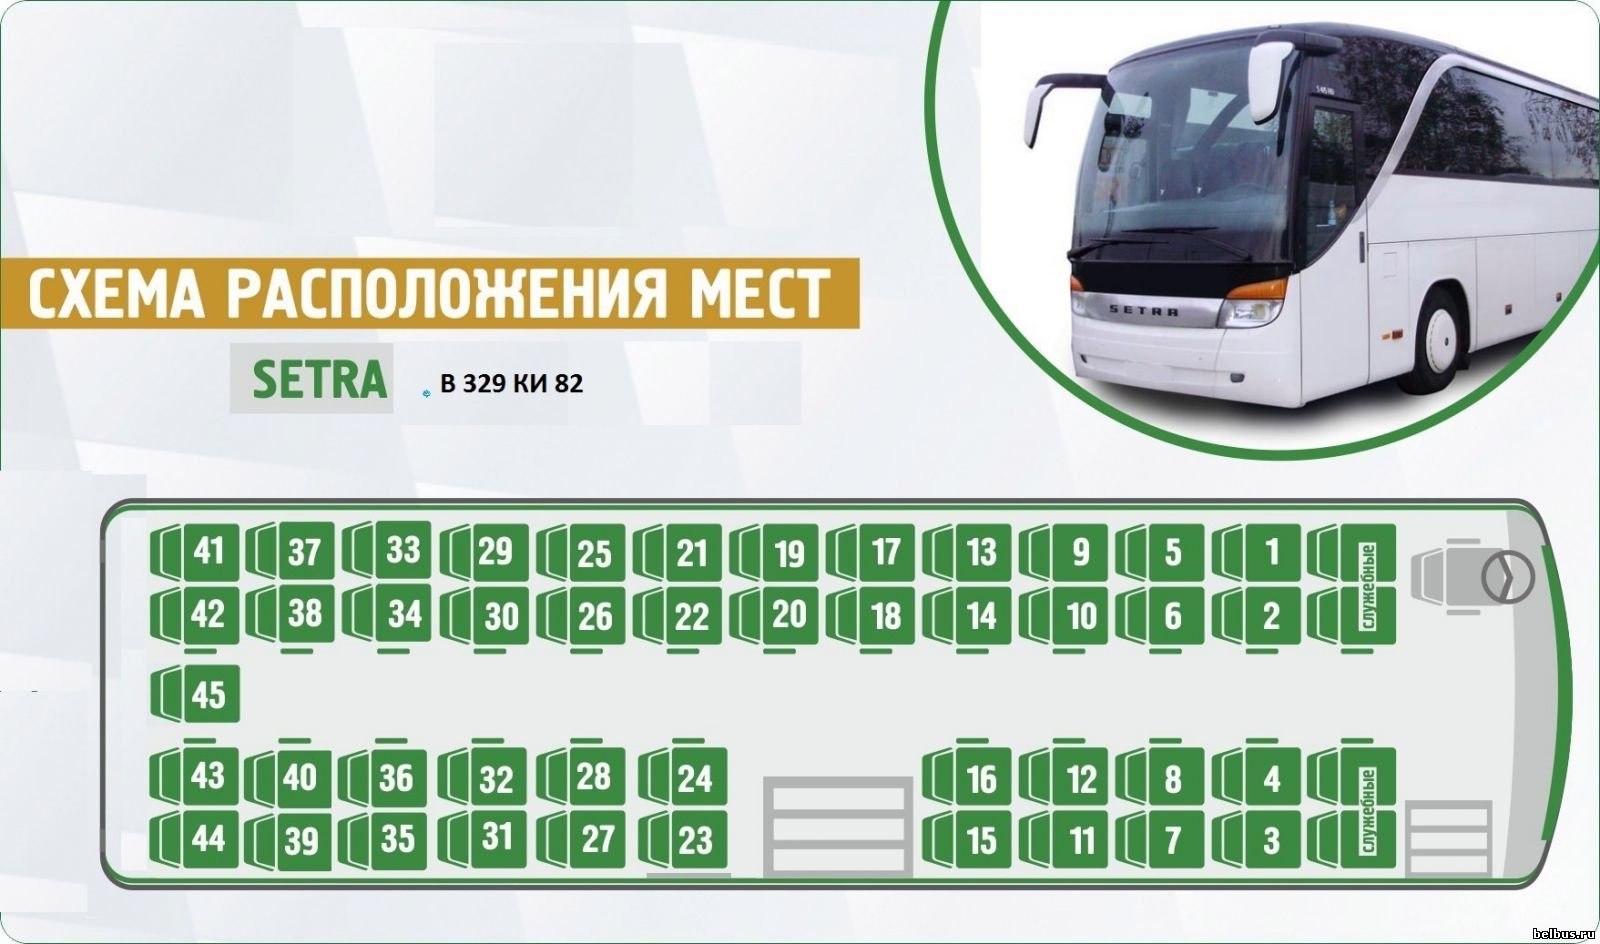 Москва расположение автобусов